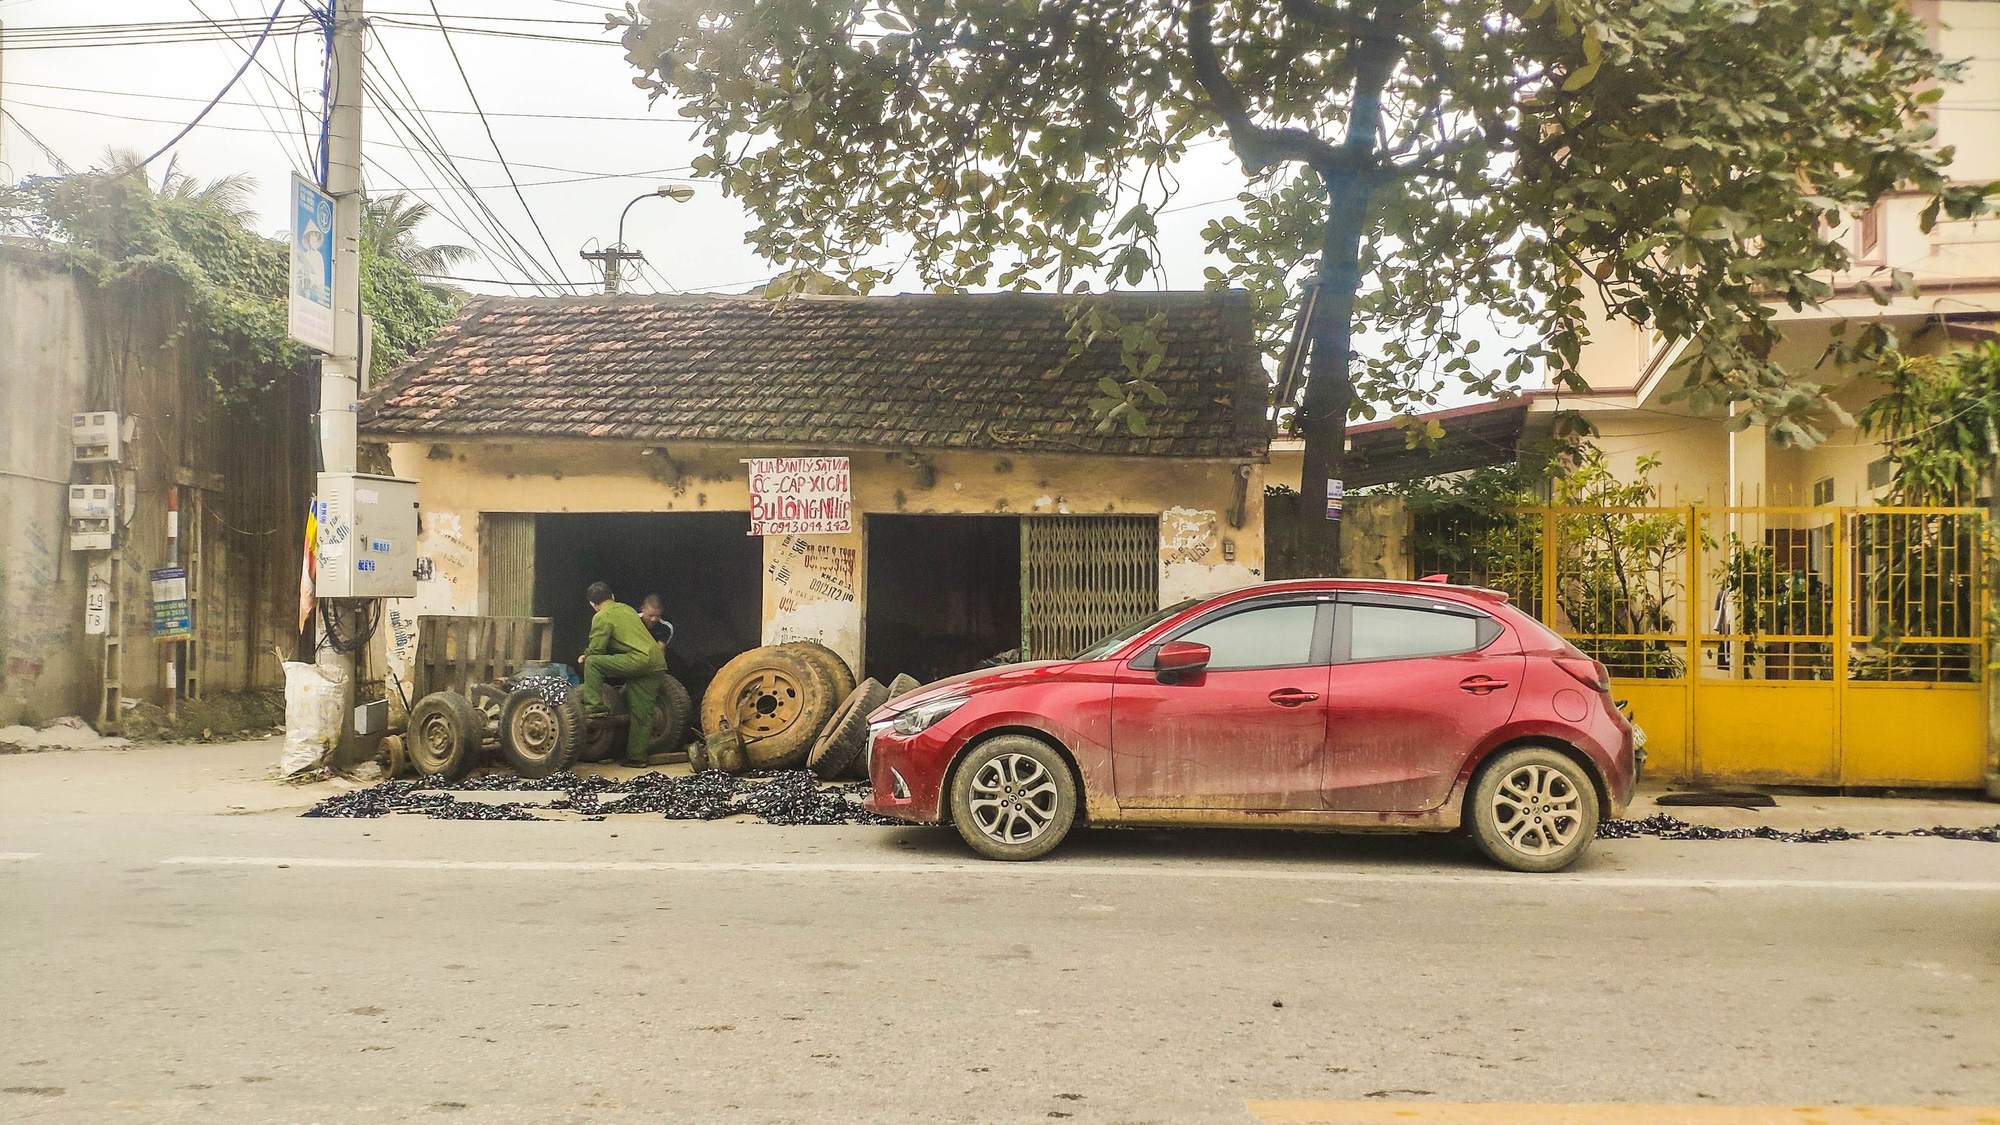 Xuyên Việt hơn 3.500km cùng Mazda2, người dùng đánh giá: Bốc, lái hay, tiết kiệm xăng nhưng chật và hơi ồn - Ảnh 2.